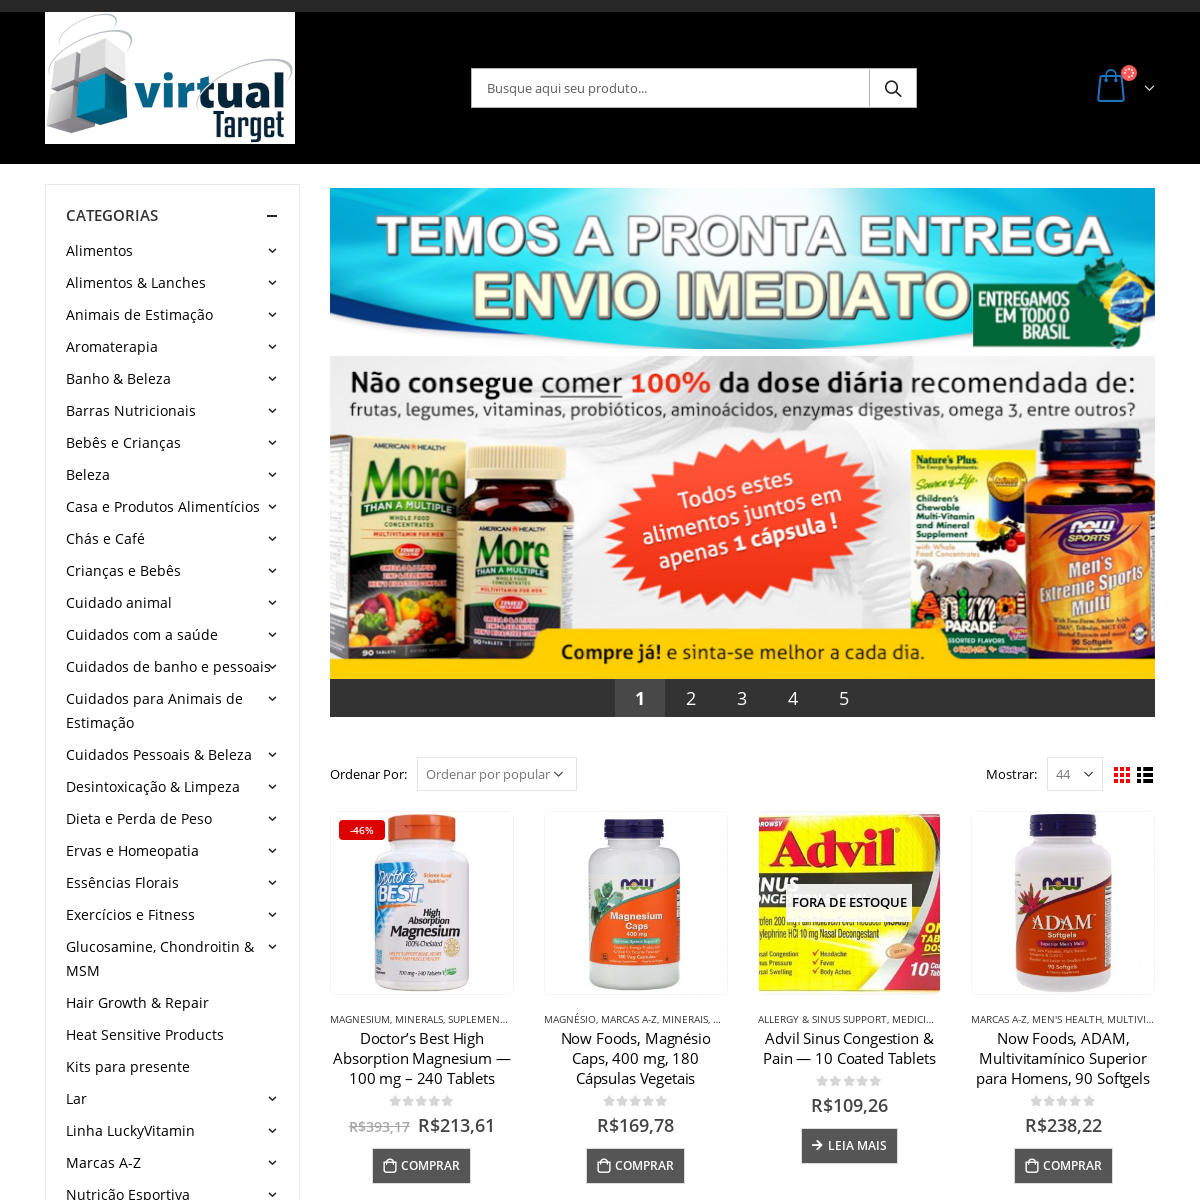 A complete backup of virtualtarget.com.br